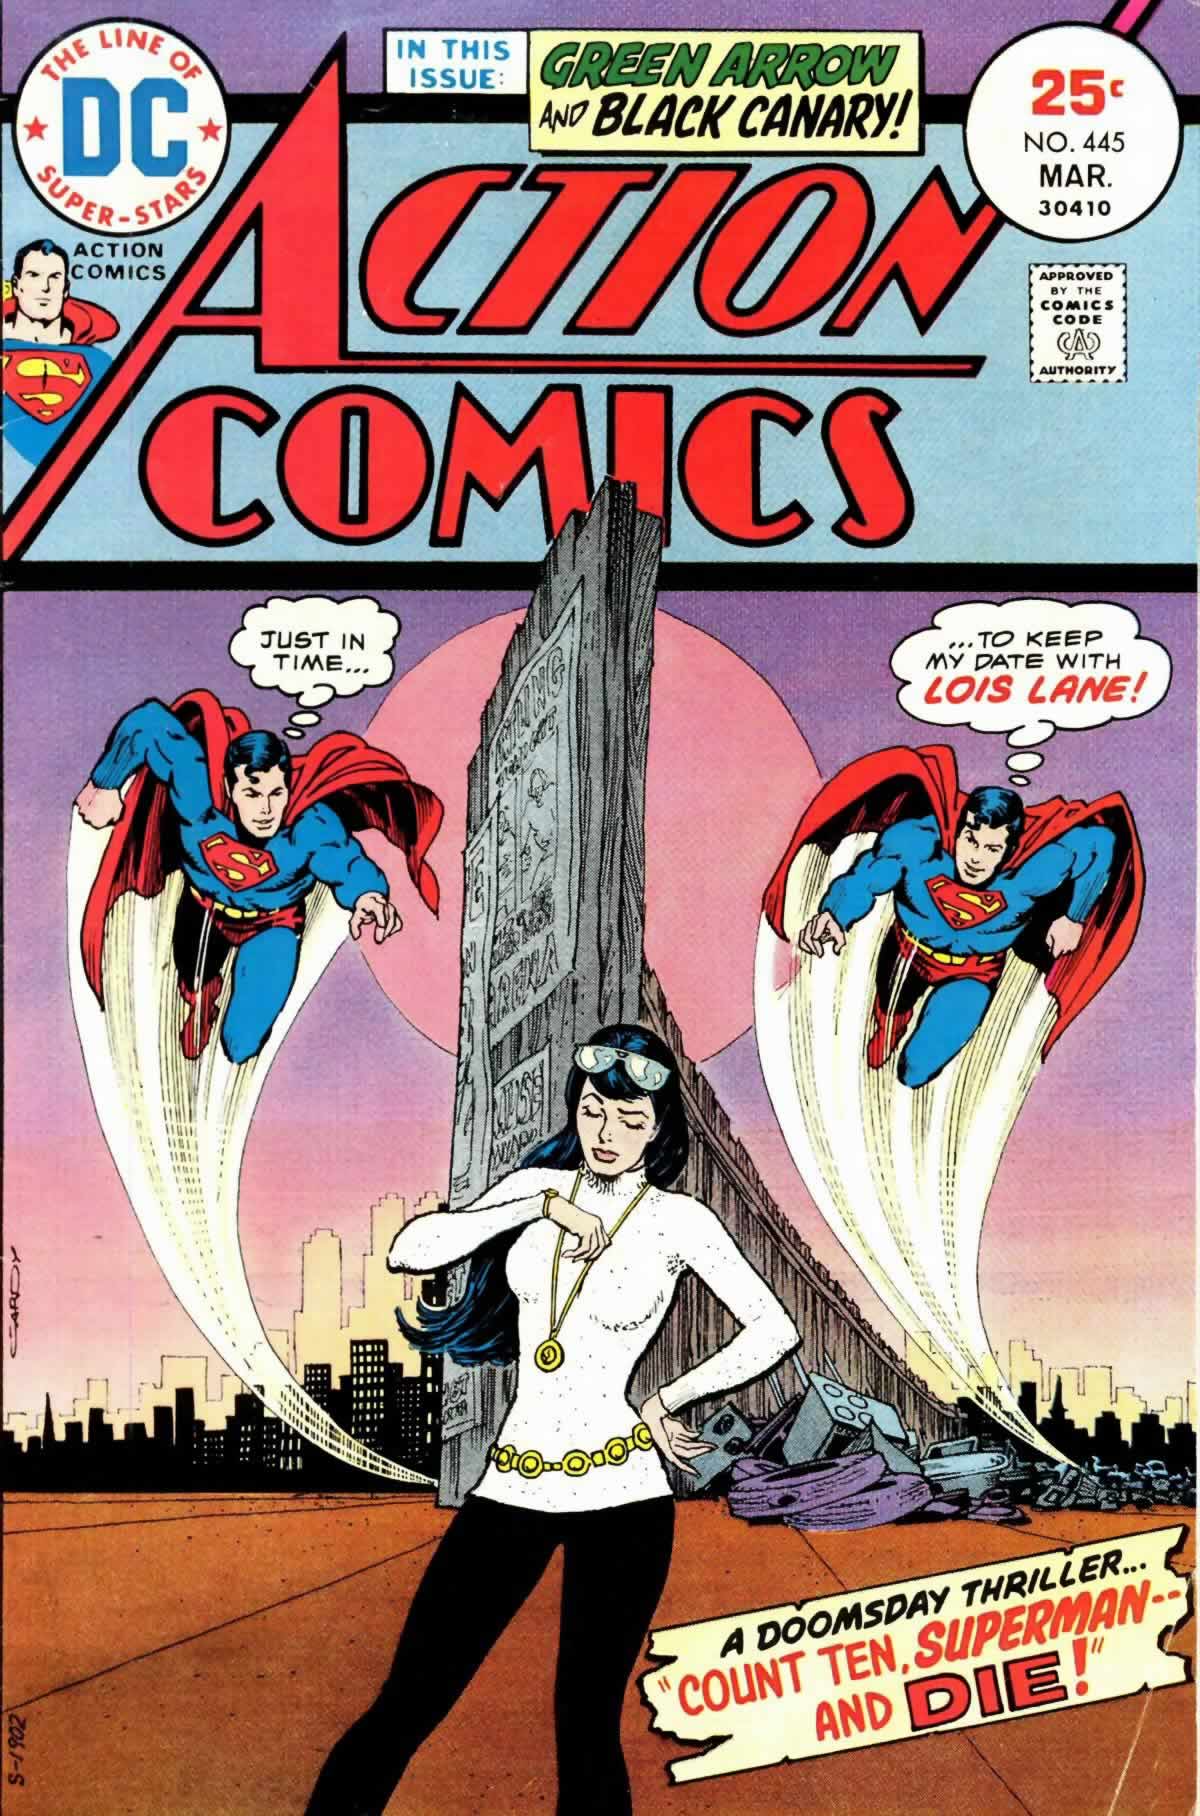 Action Comics Vol. 1 #445